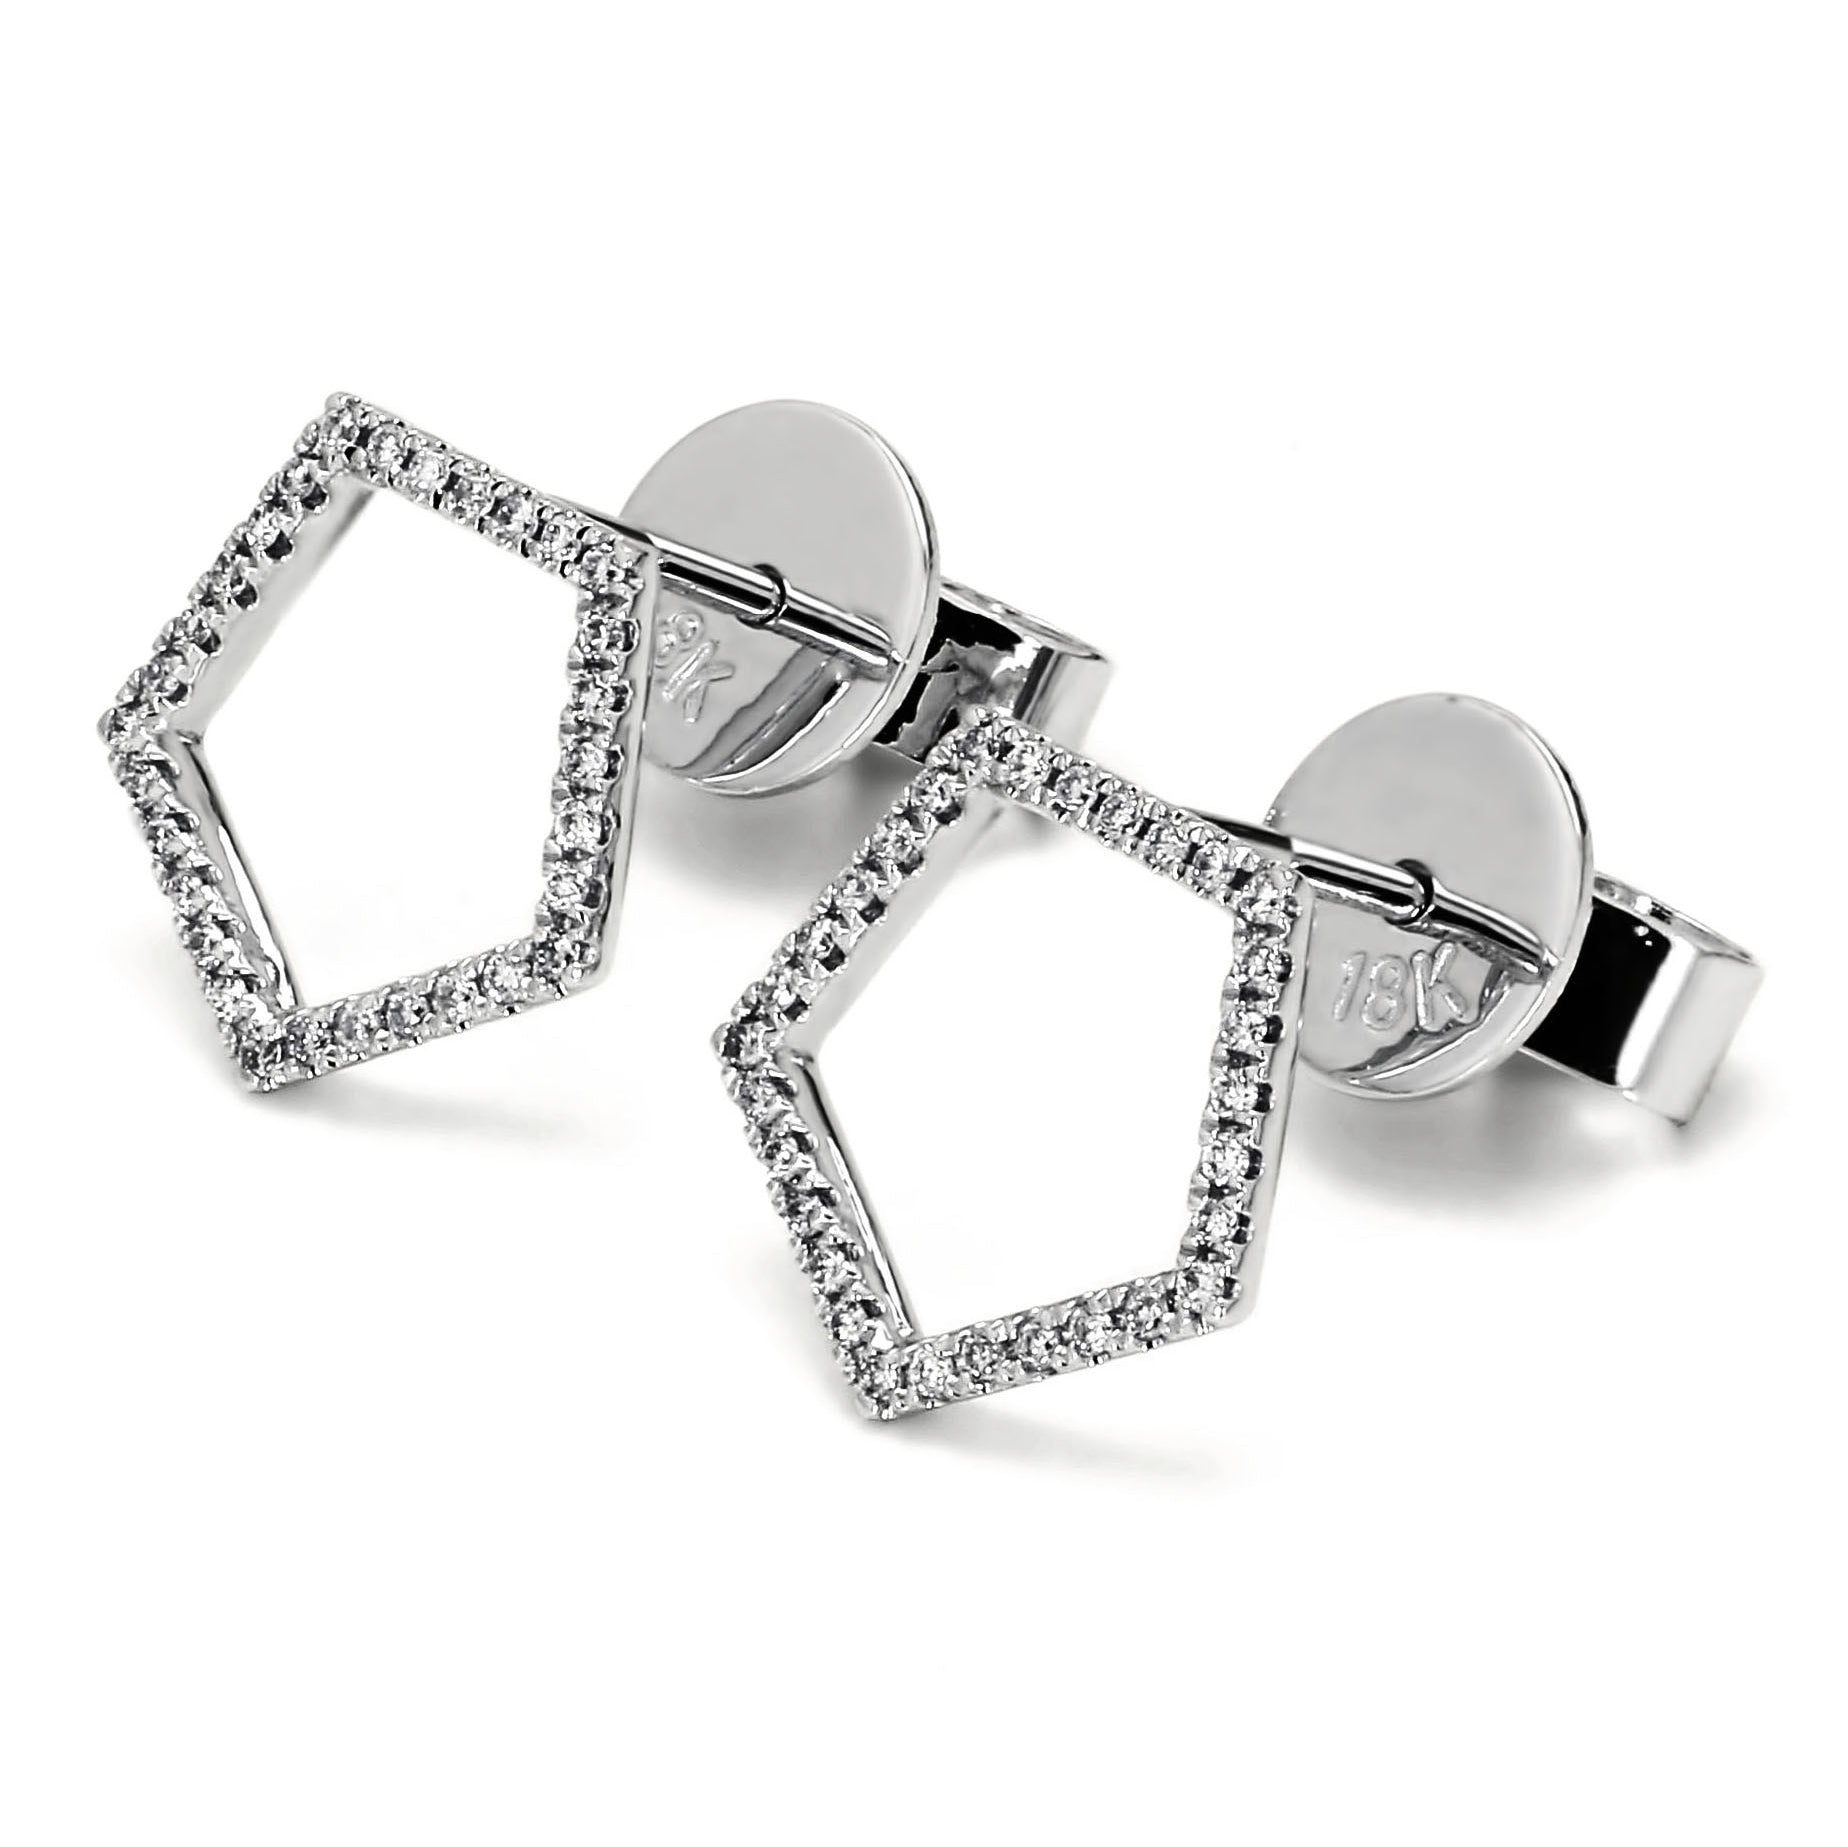 Adamar Jewels LUZ Cielo Earrings in 18K white gold set with diamonds